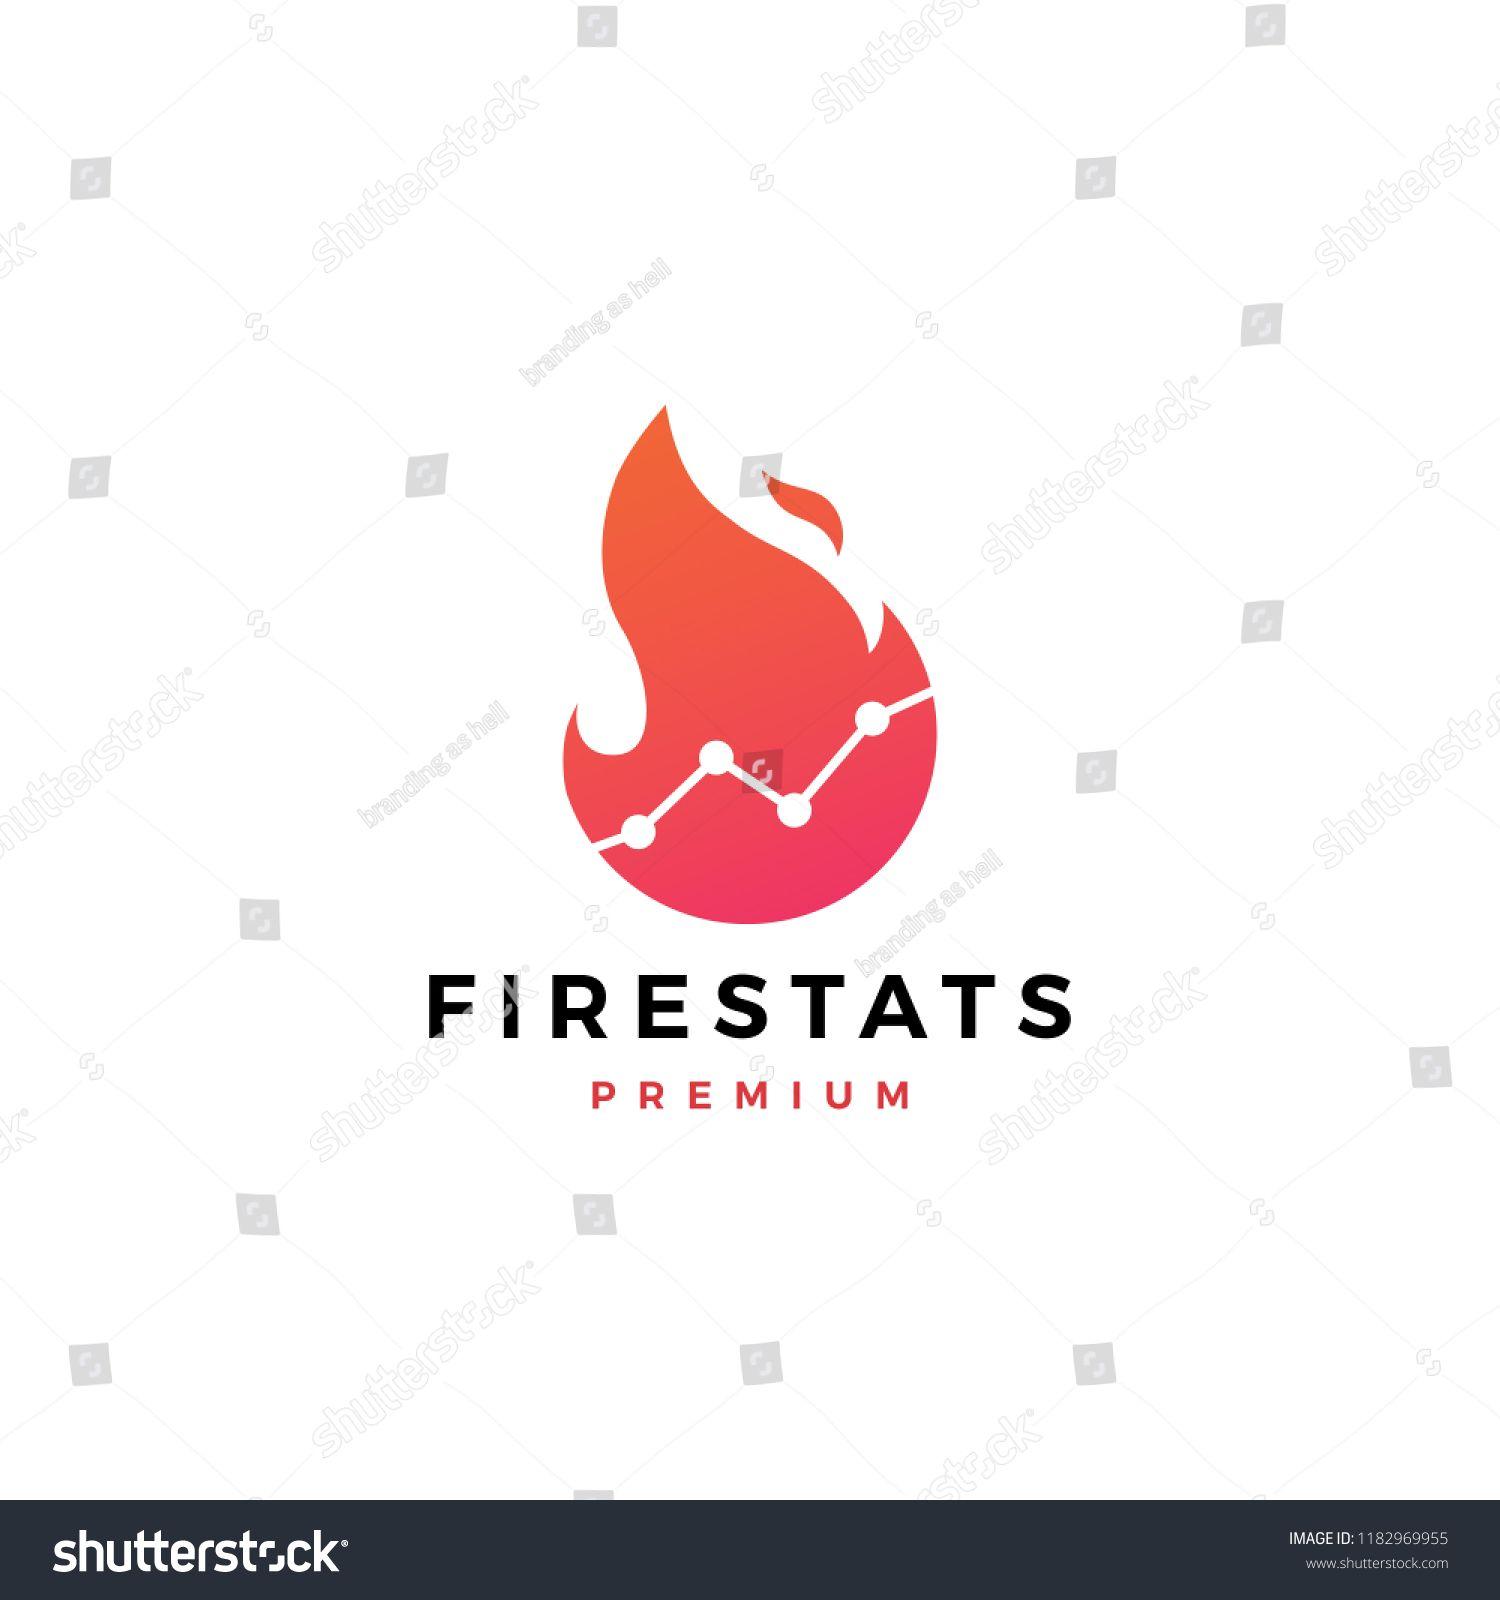 Fire Element Logo - fire heat stats logo #fire, #symbol, #design, #logo, #vector, #sign ...